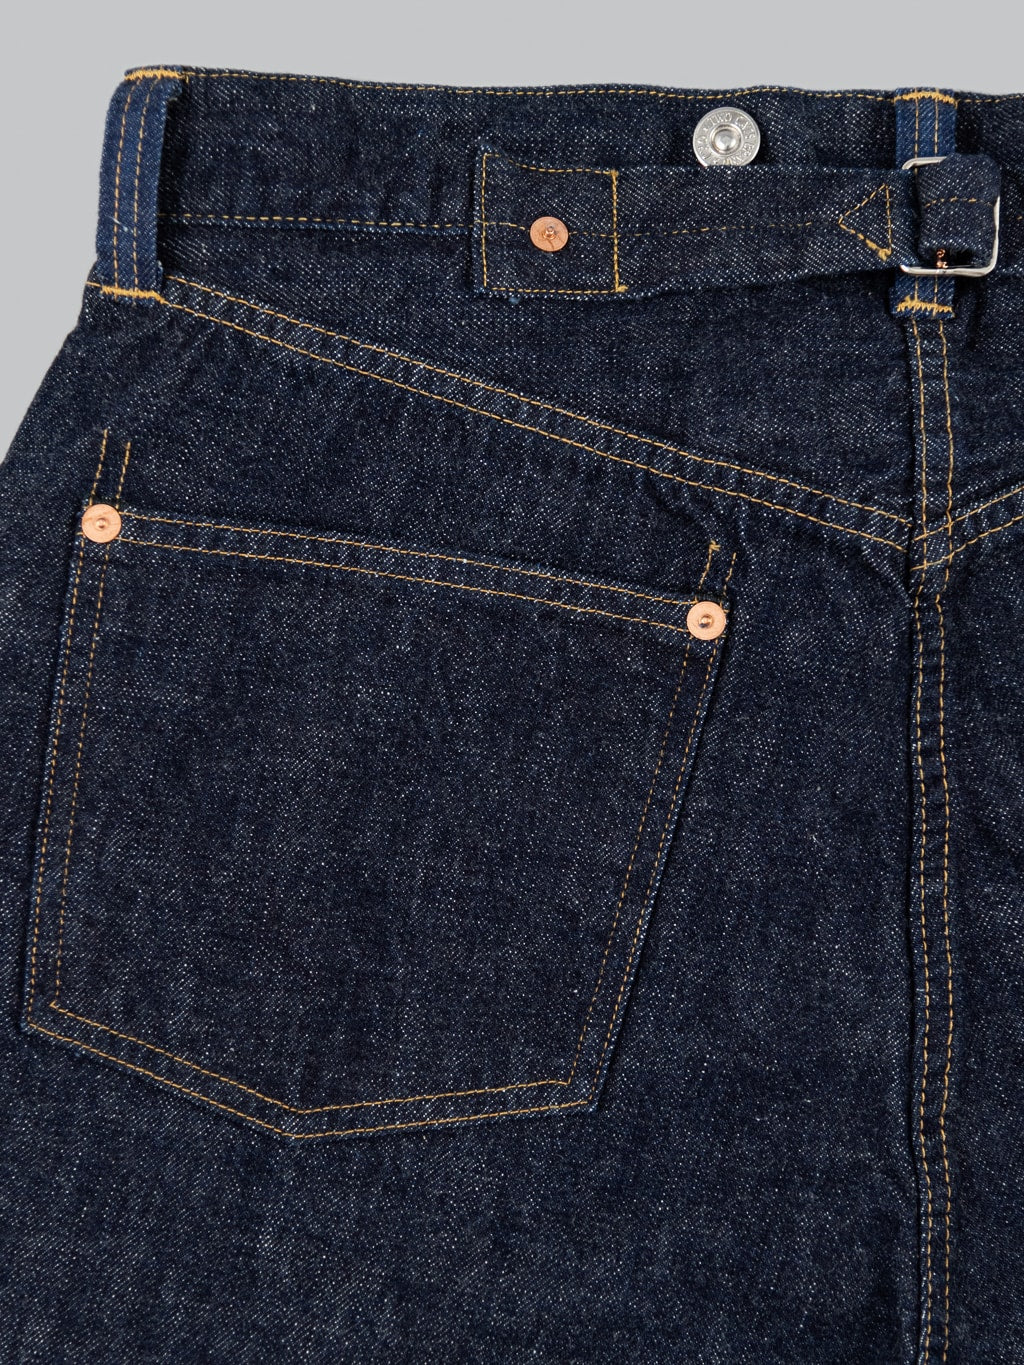 TCB 20s indigo Jeans one wash vintage left pocket